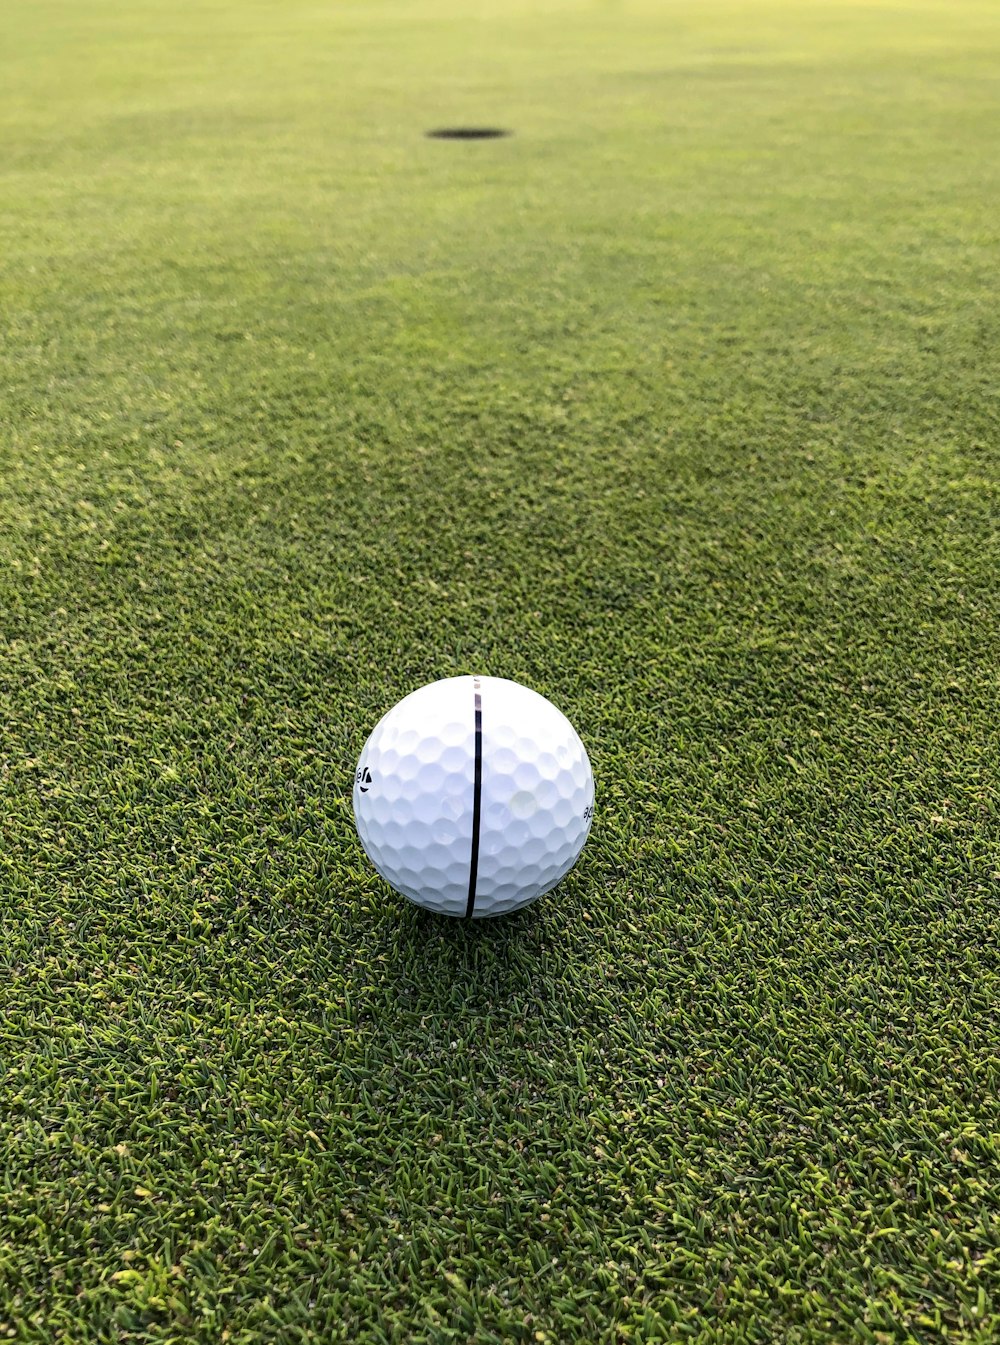 昼間は緑の芝生のフィールドに白いゴルフボール